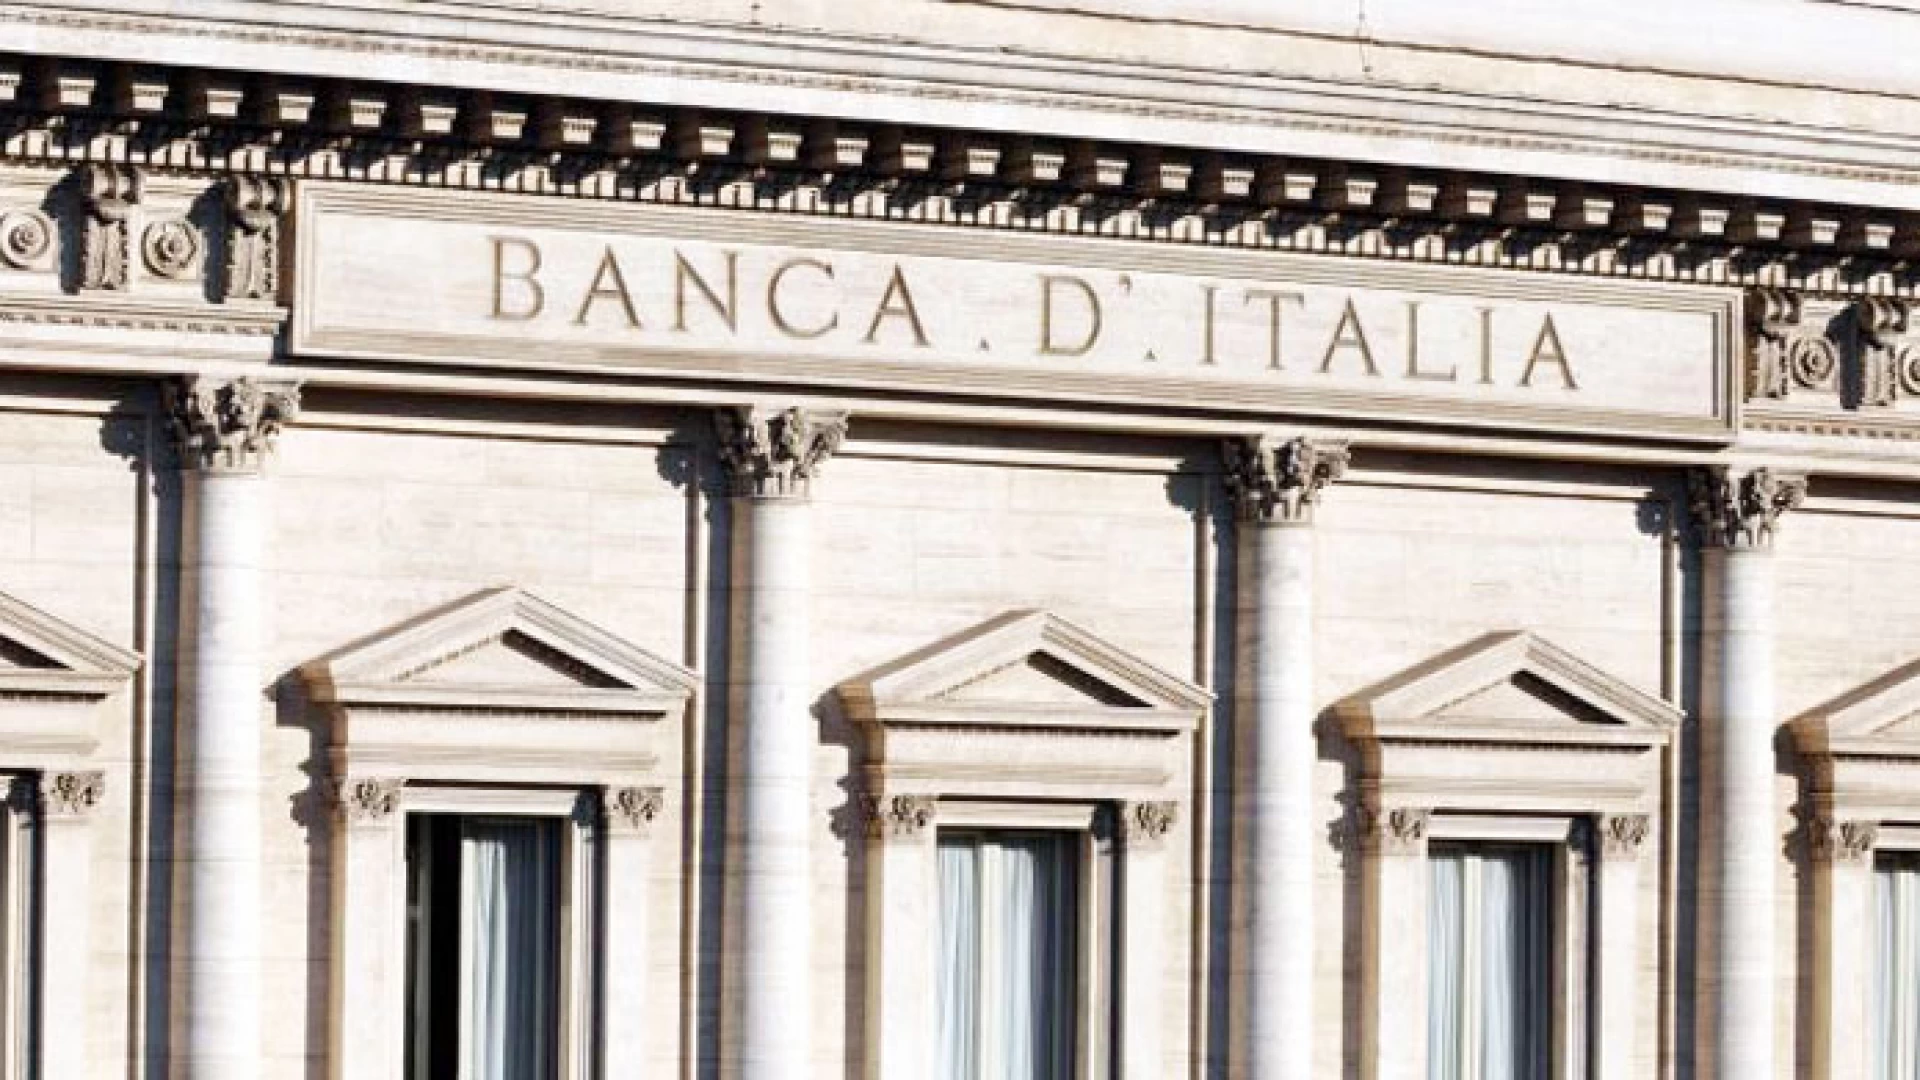 Banca d’Italia: martedì 28 maggio la presentazione delle banconote da 100 e 200 euro.